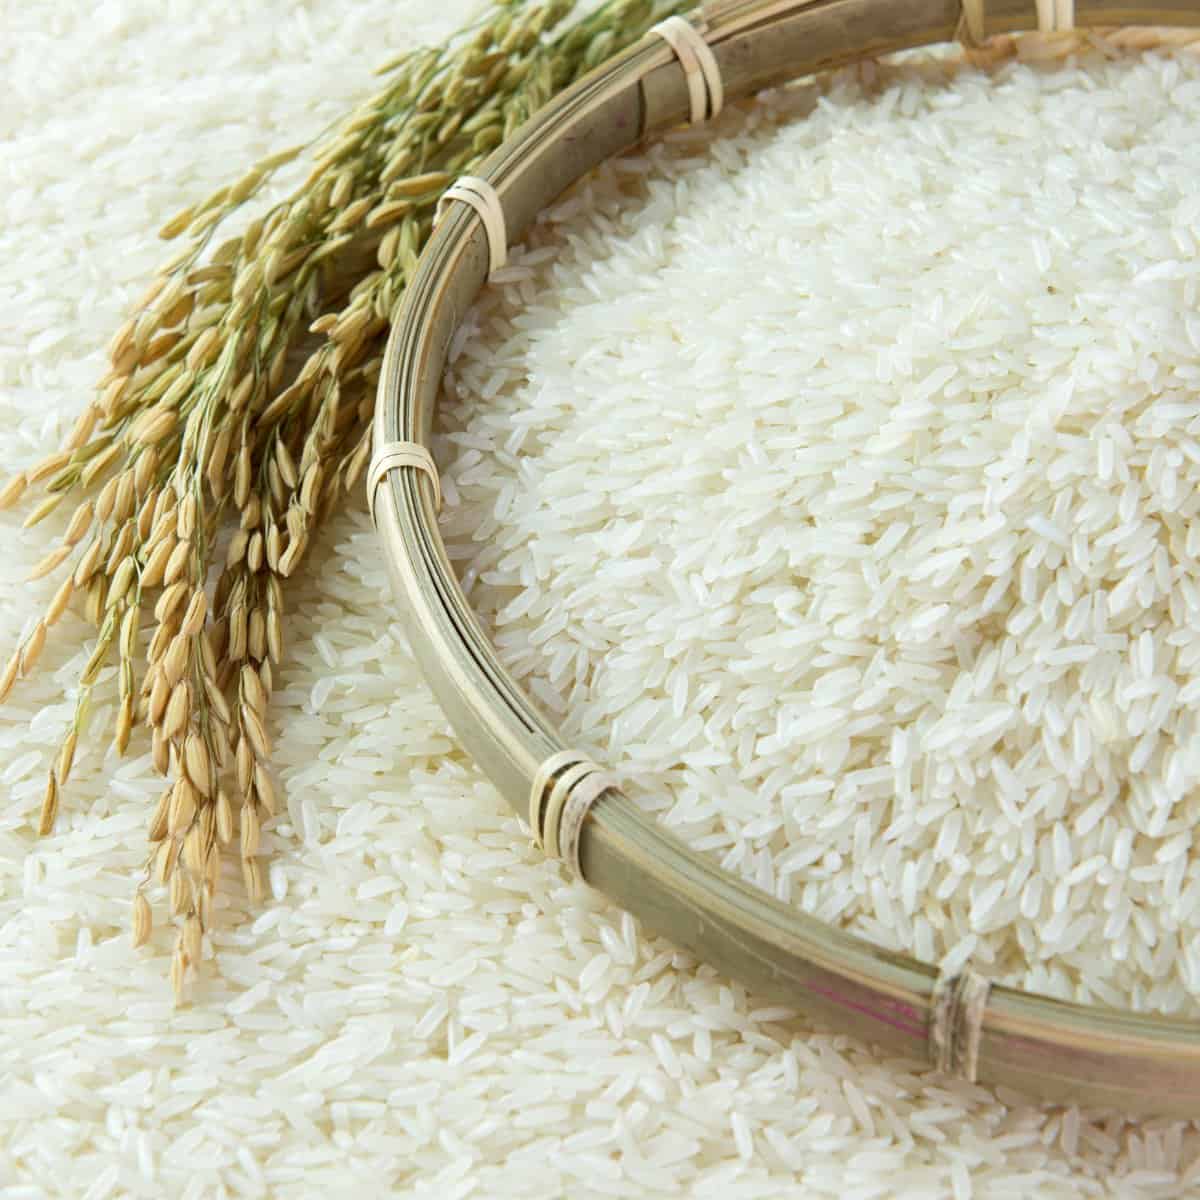 What is medium-grain rice